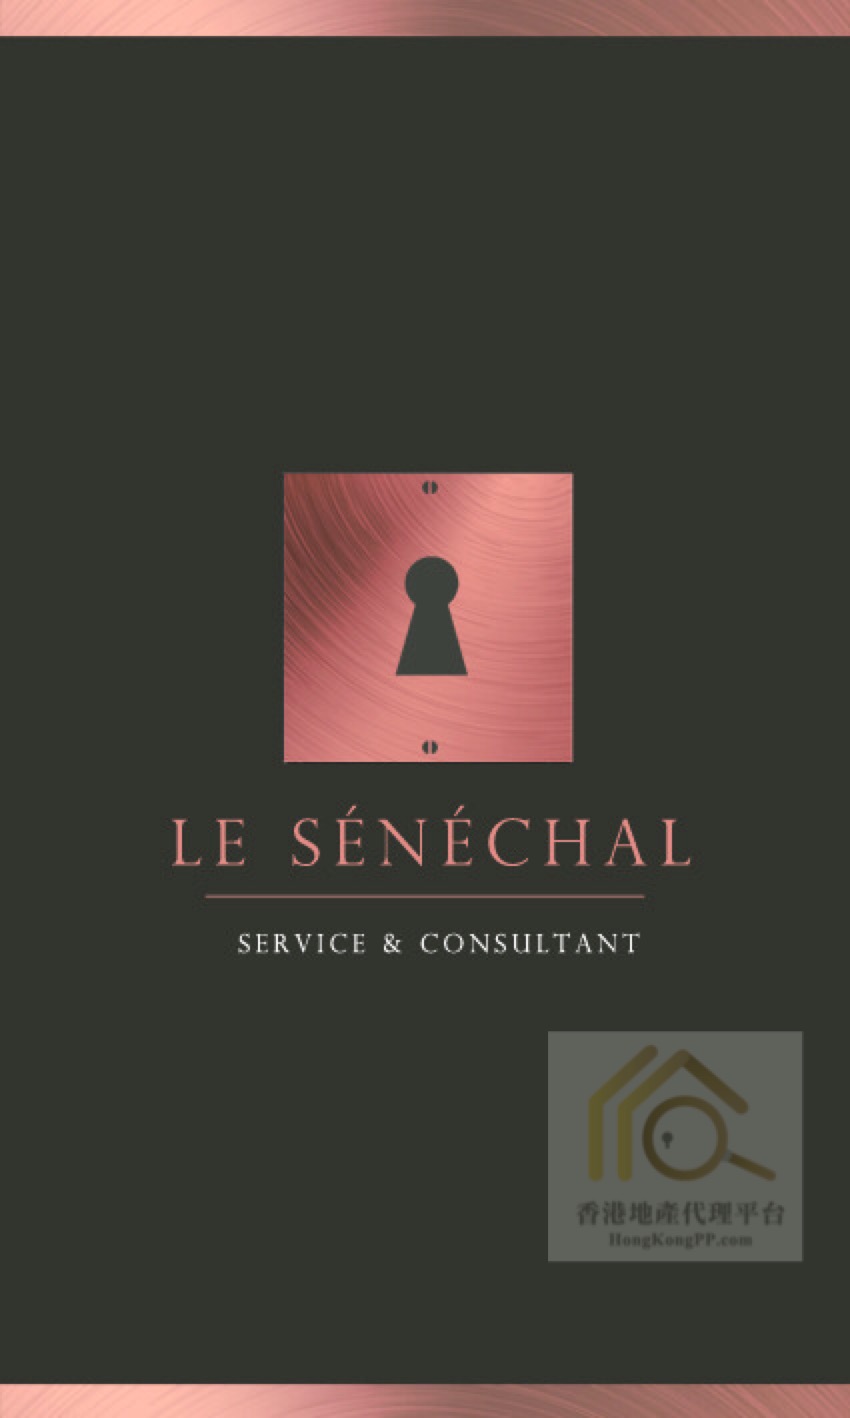 地產代理公司: Le Senechal Service & Consultant Company Limited